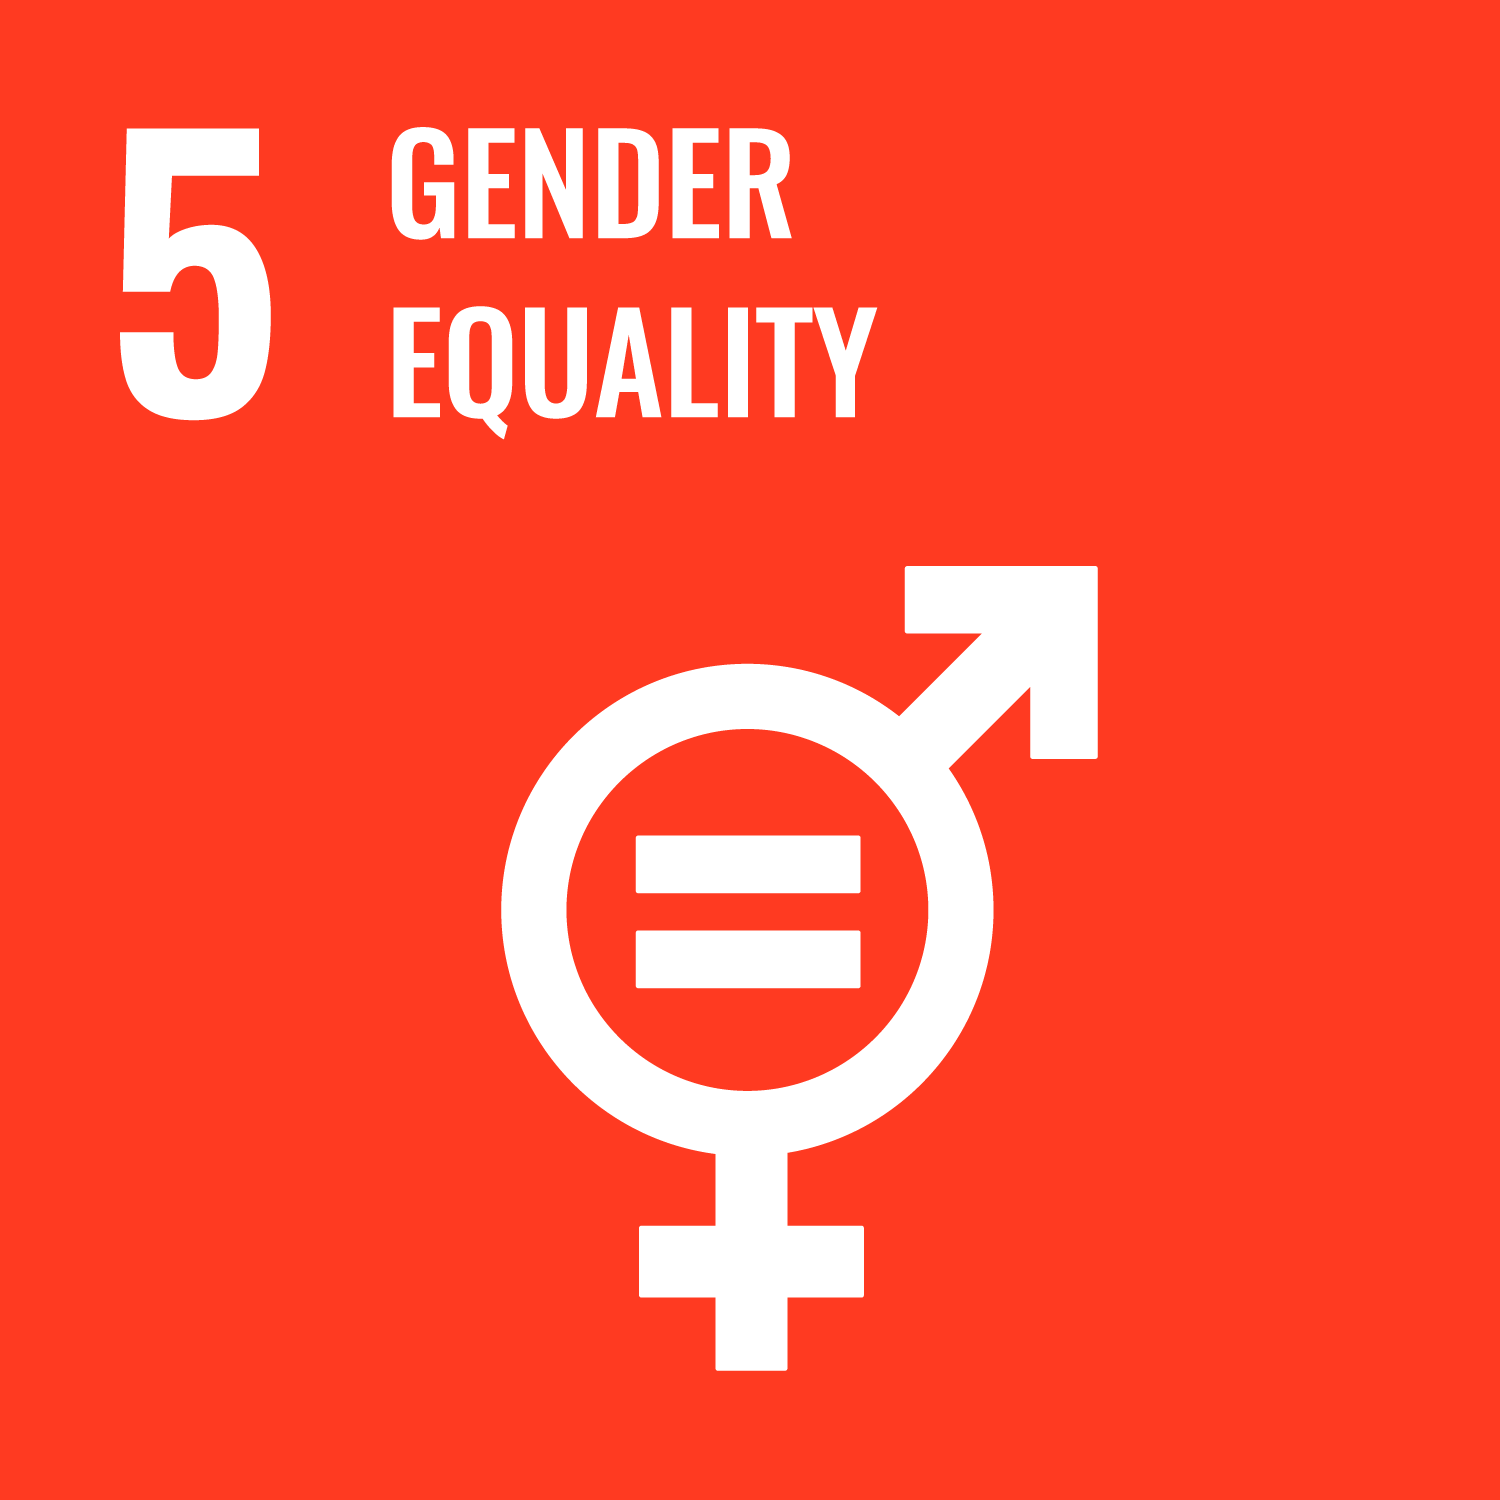 05. Gender equality